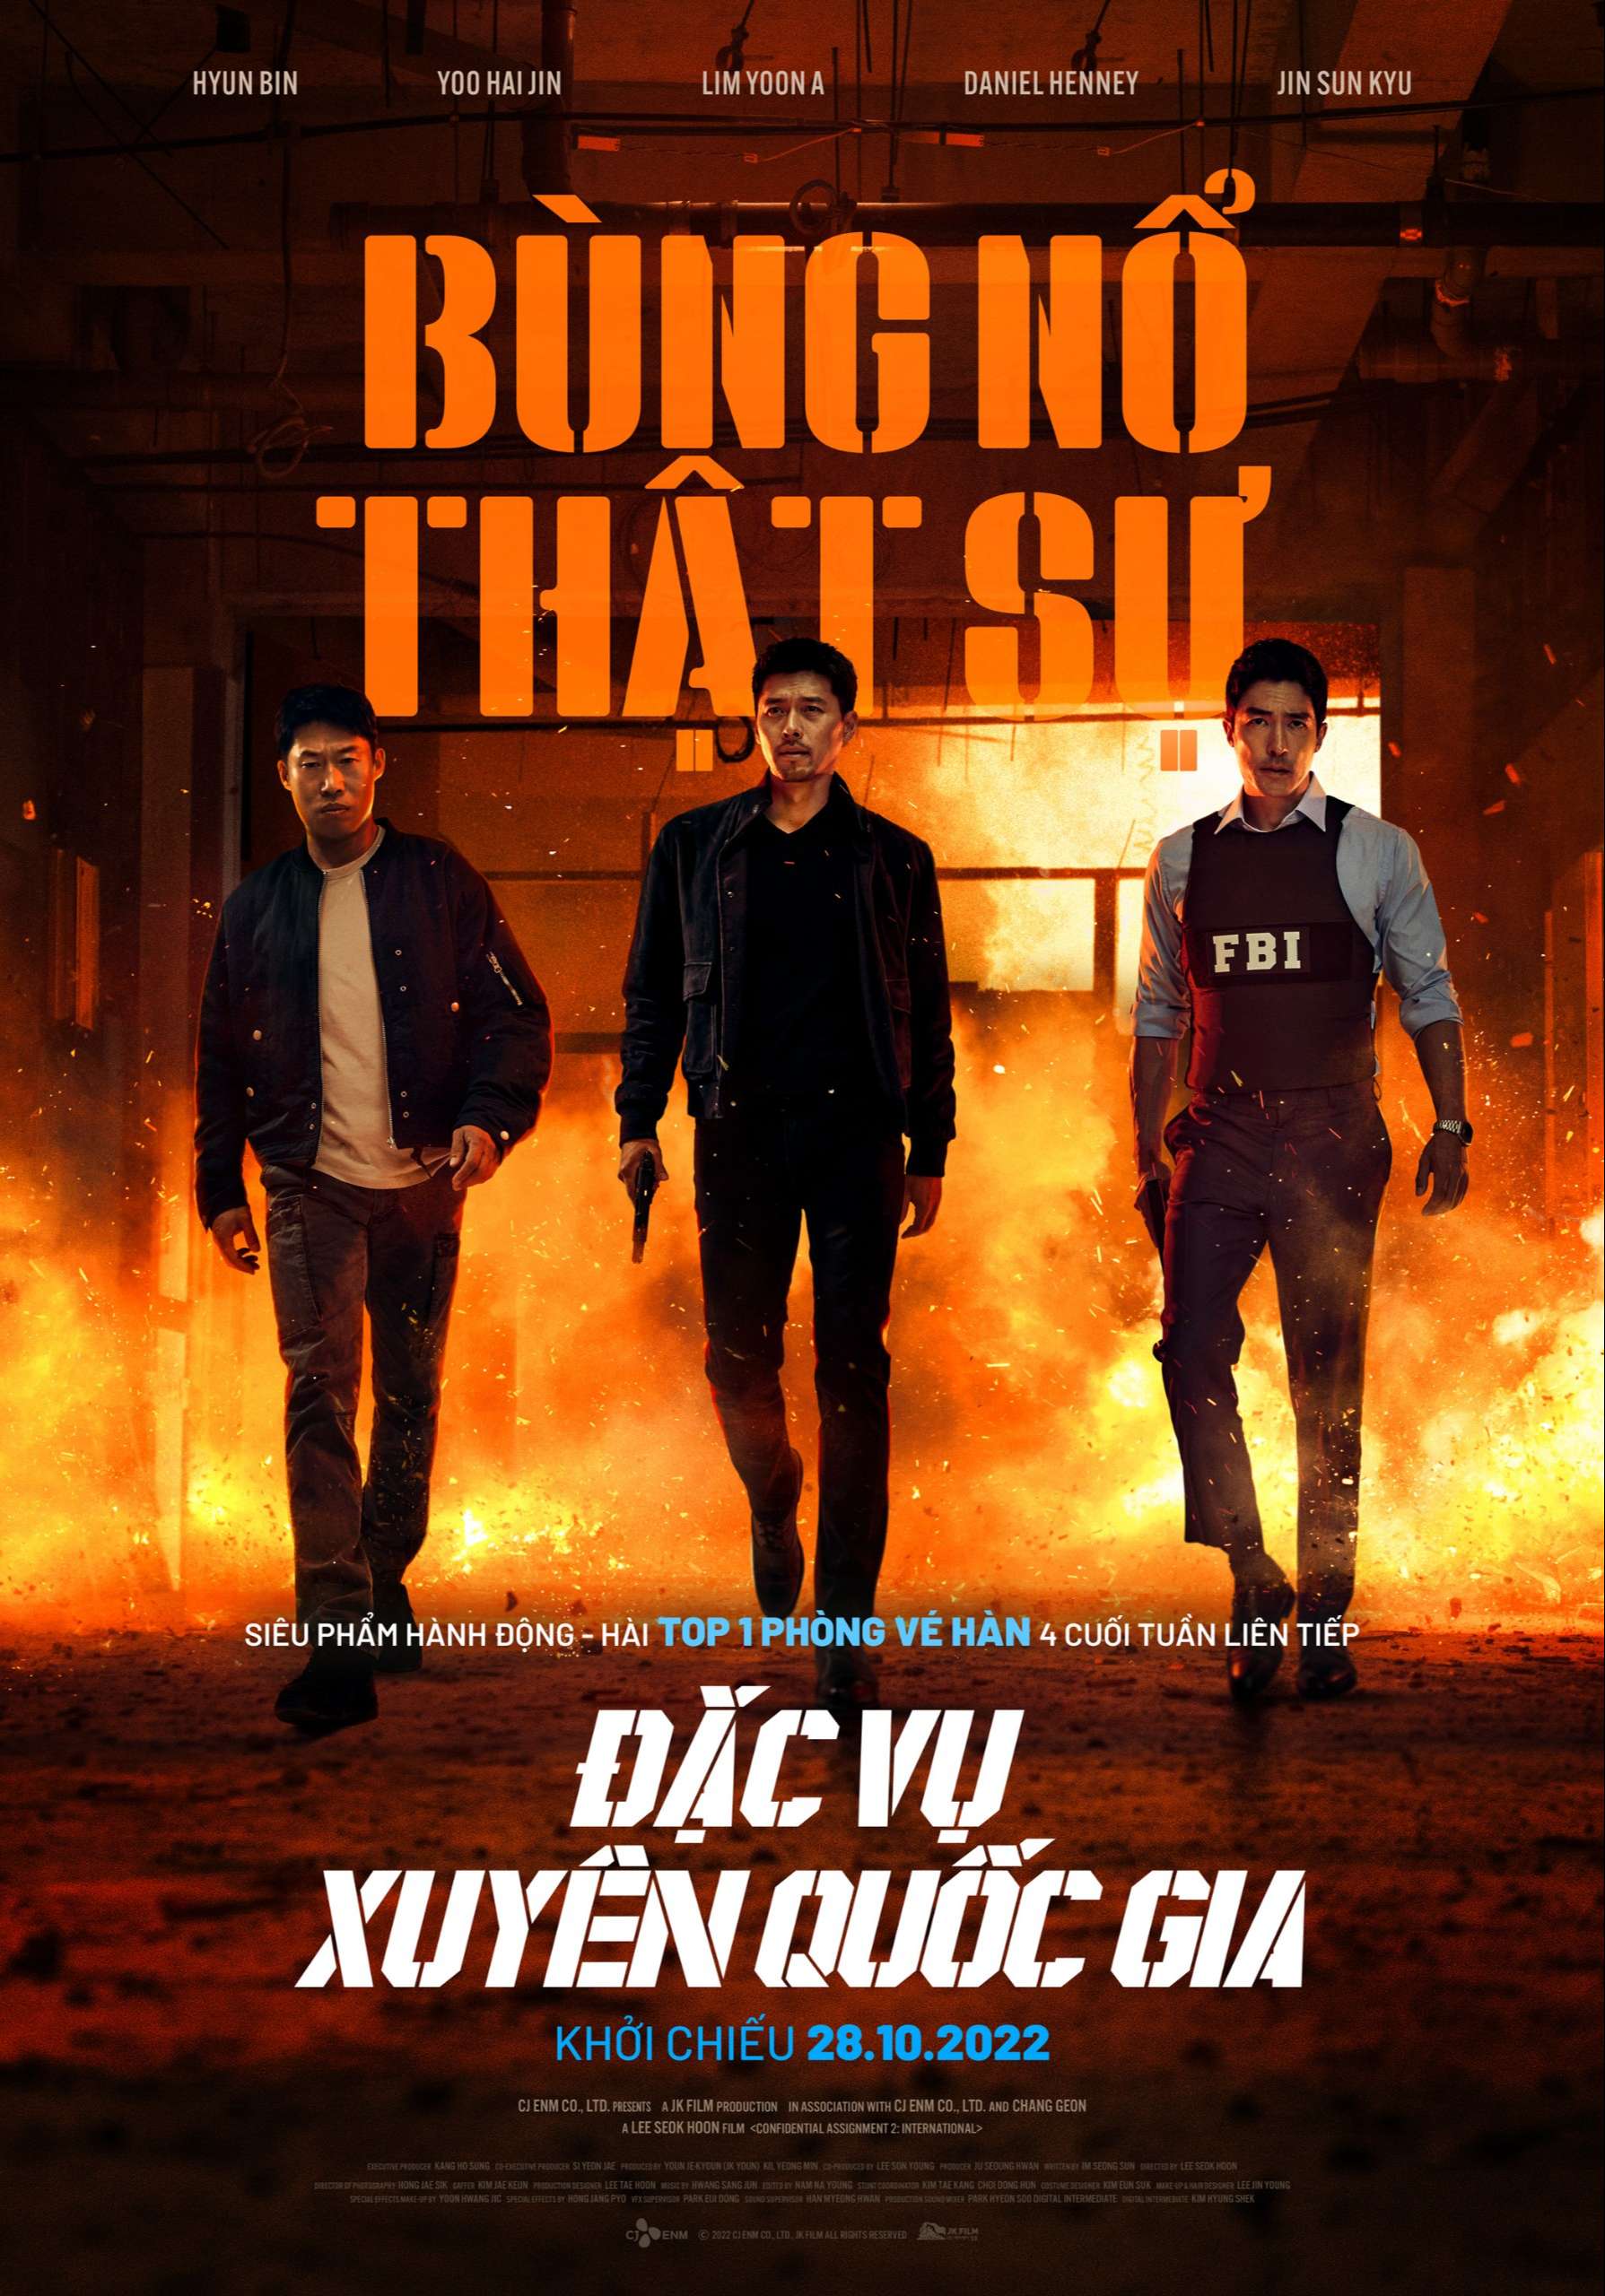 Poster Phim hành động Đặc vụ xuyên quốc gia với sự góp mặt của Hyun Bin